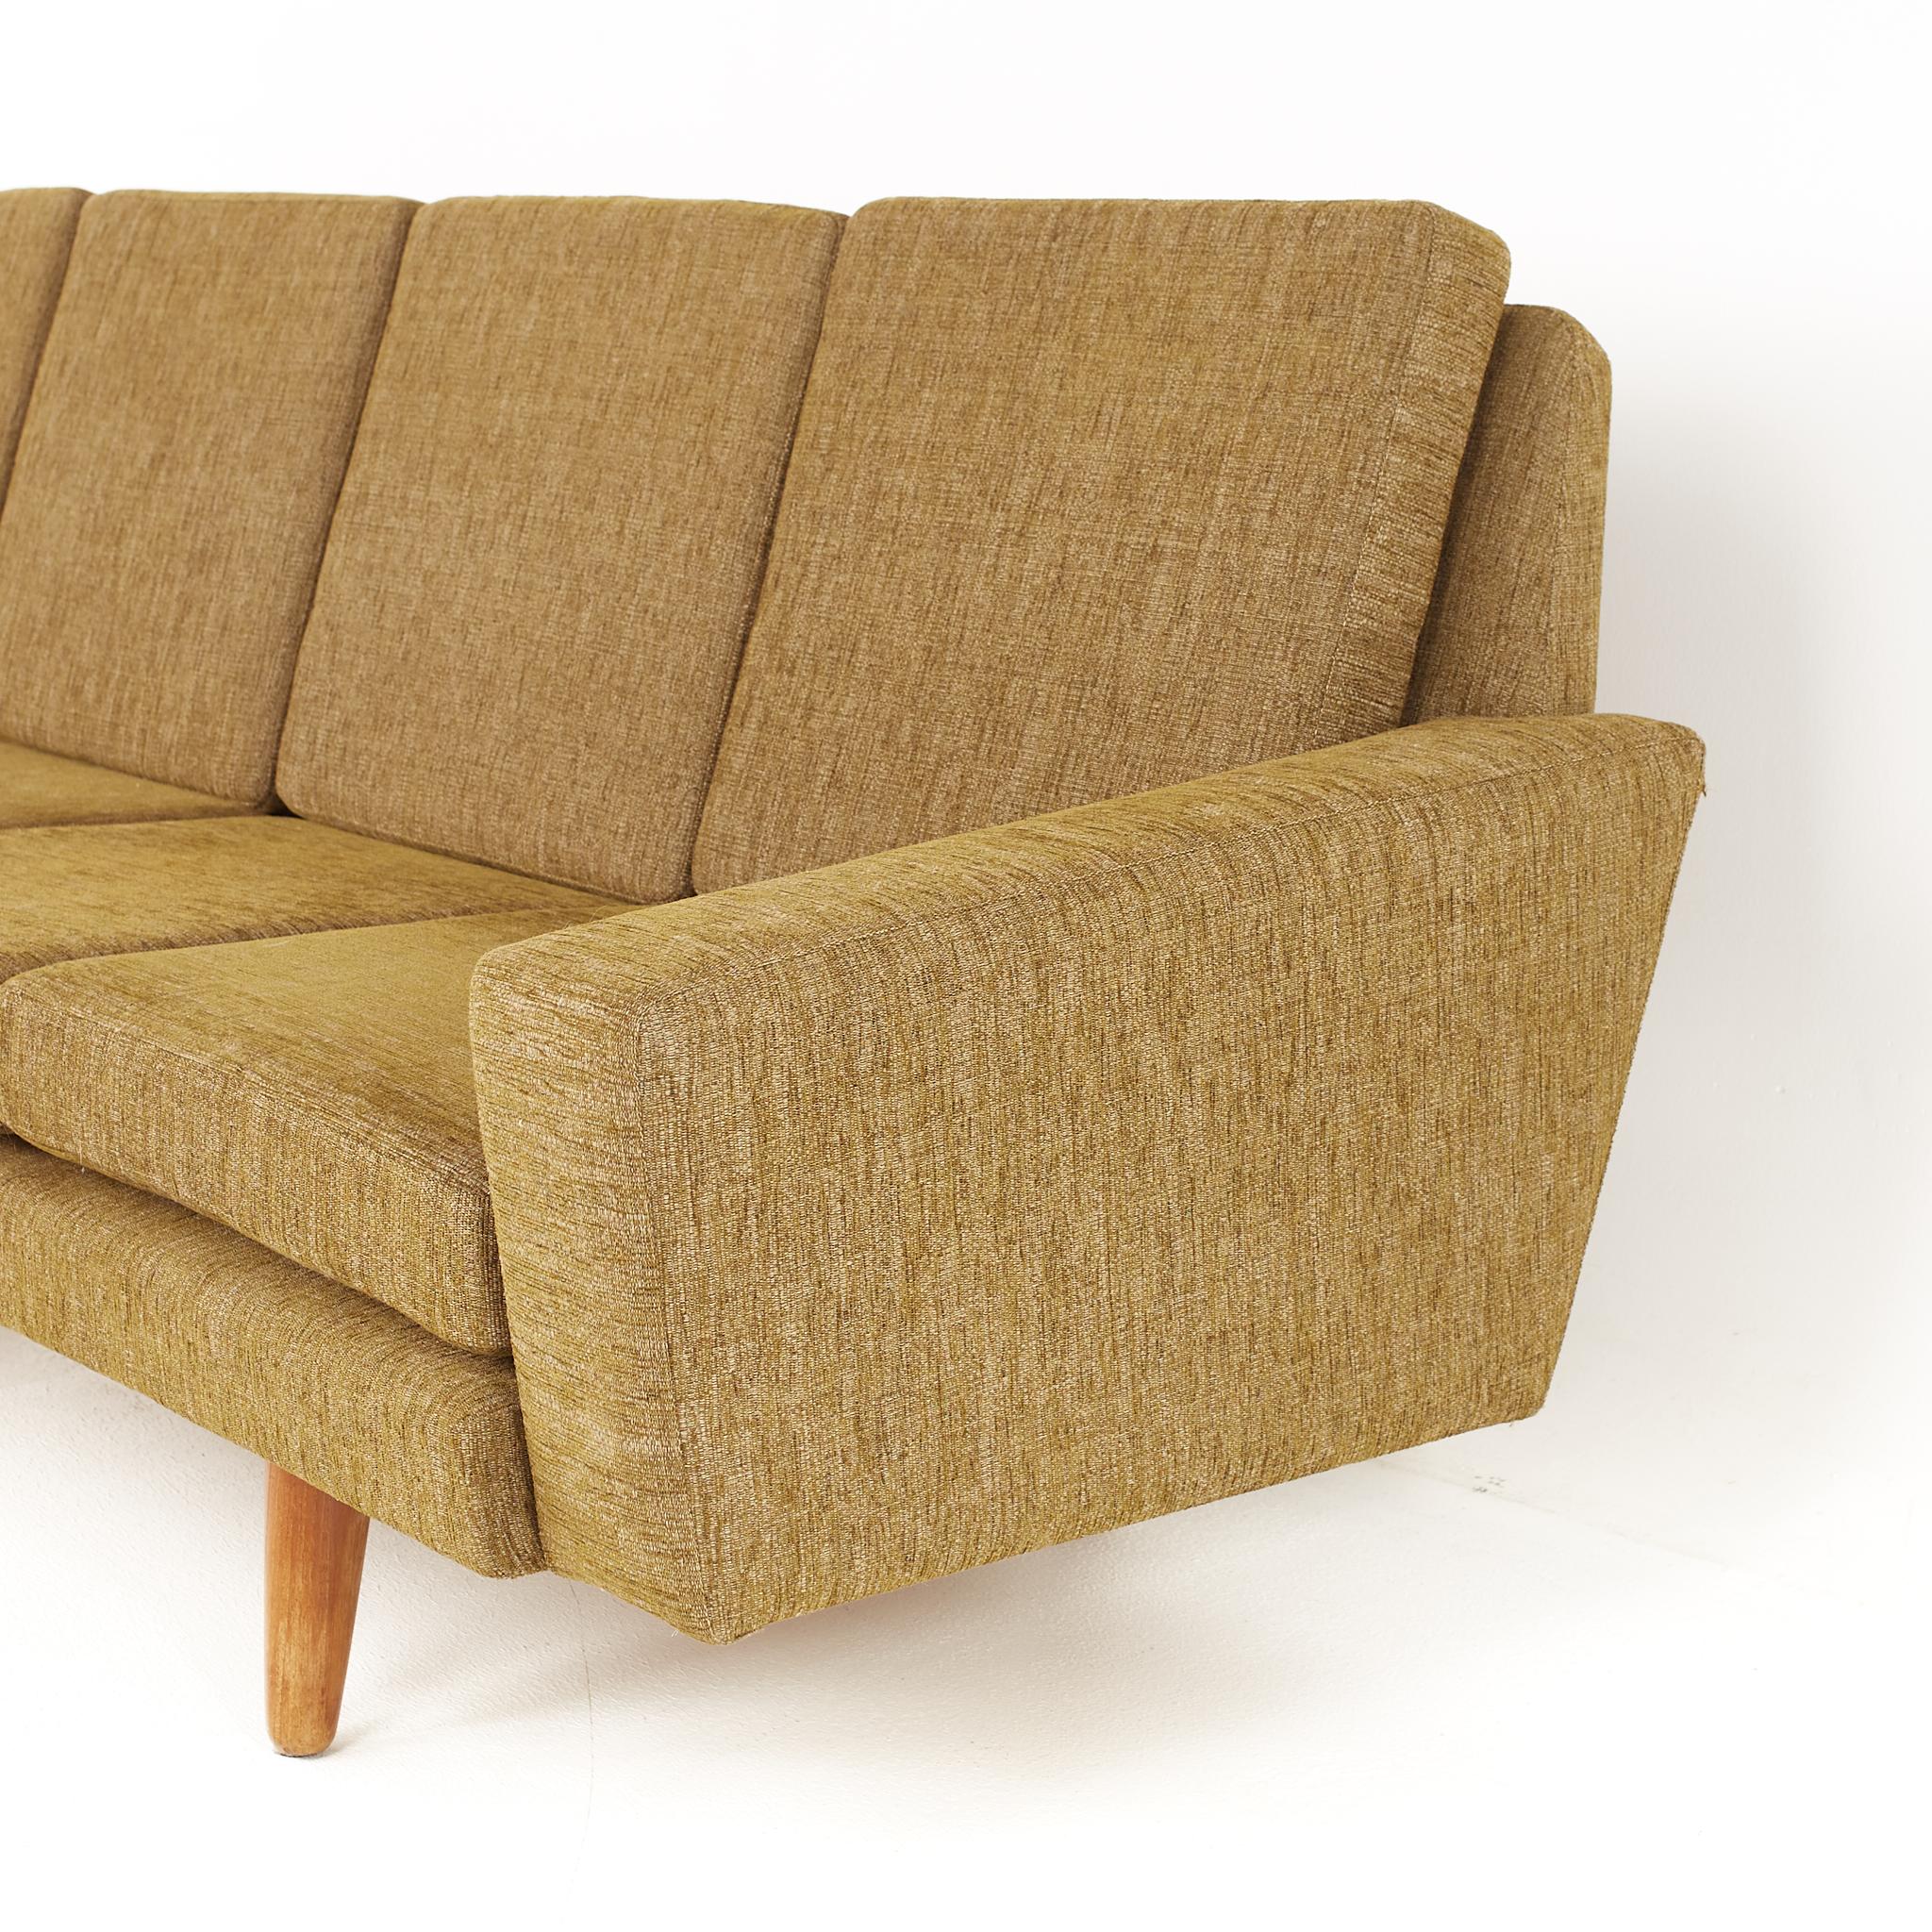 Late 20th Century Illum Wikkelso Style Mid-Century Danish Teak Sofa